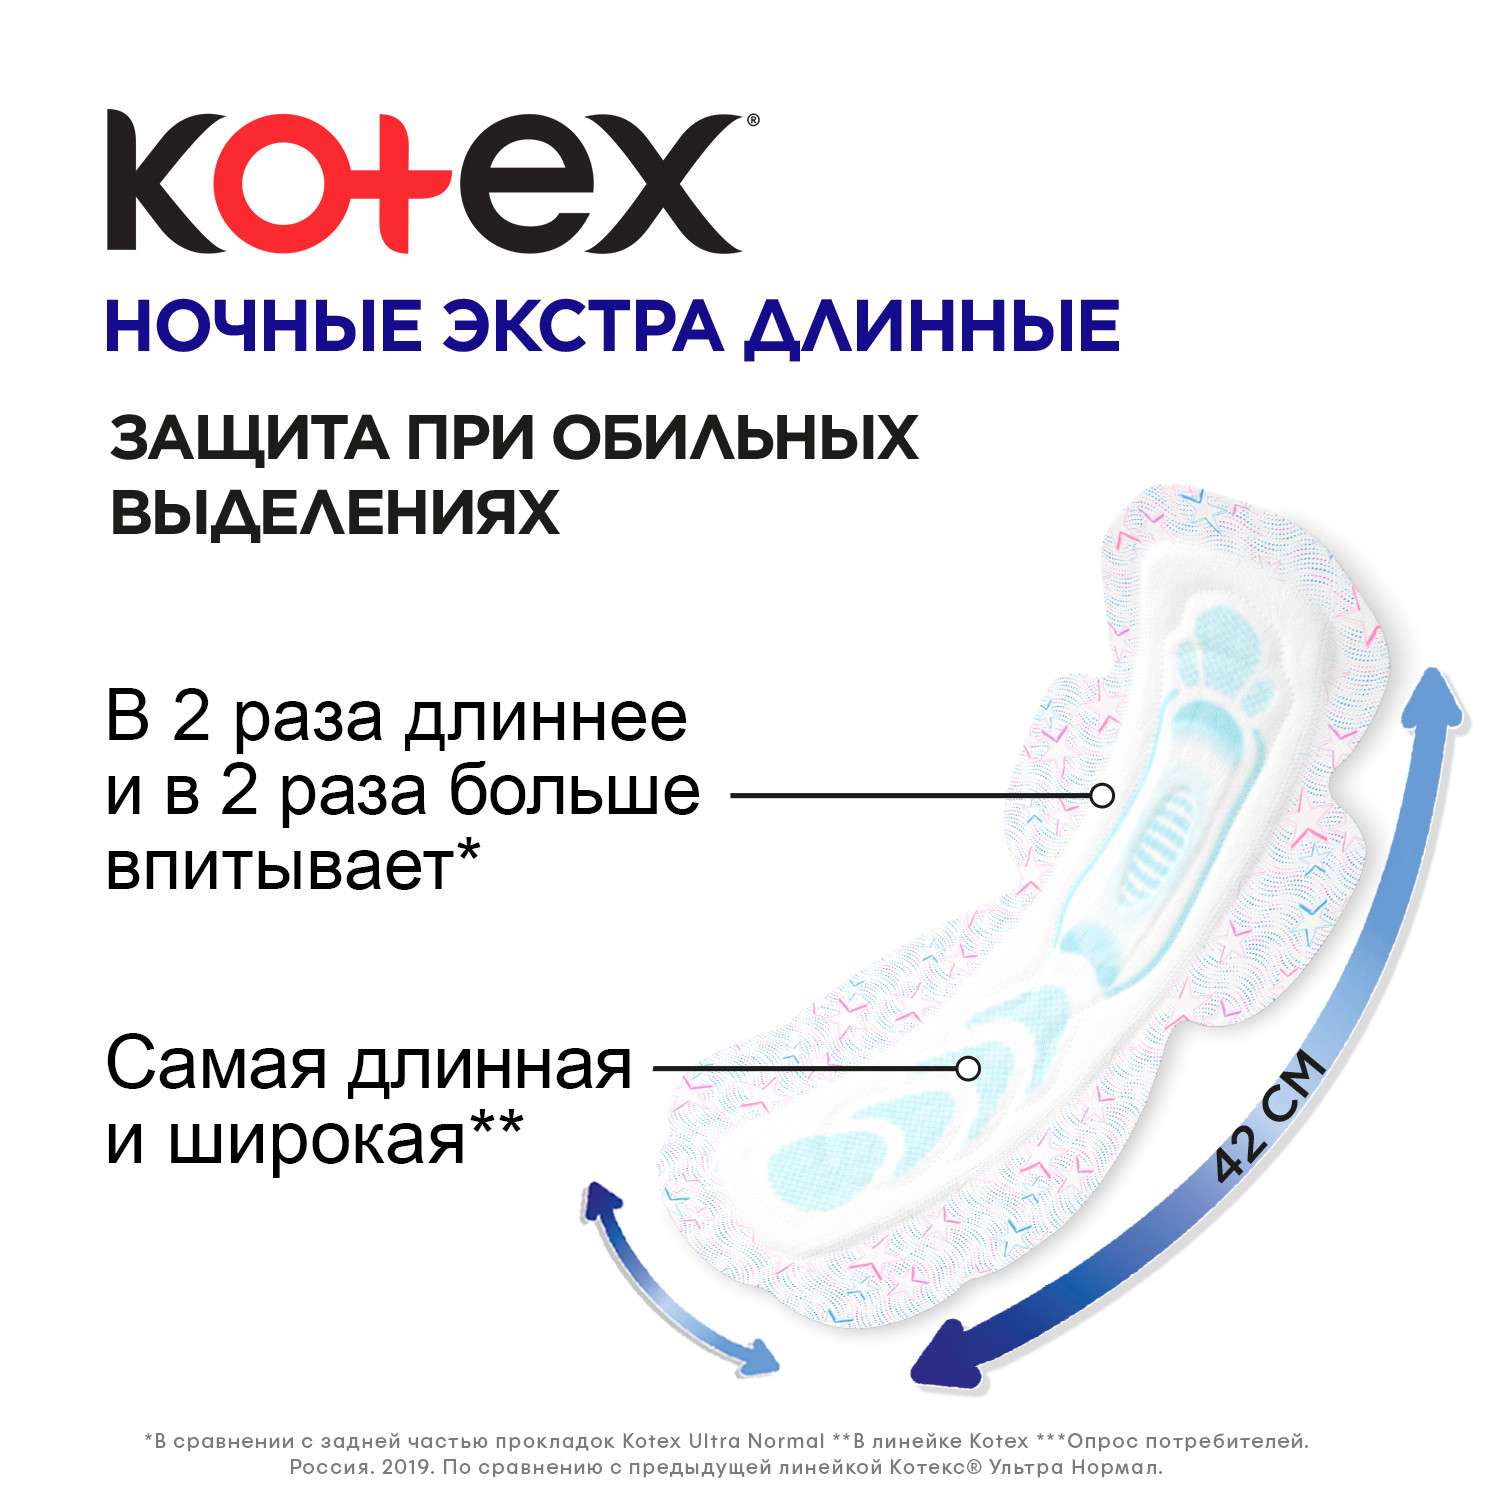 Прокладки гигиенические Kotex Ночные экстра длинные 4шт - фото 5